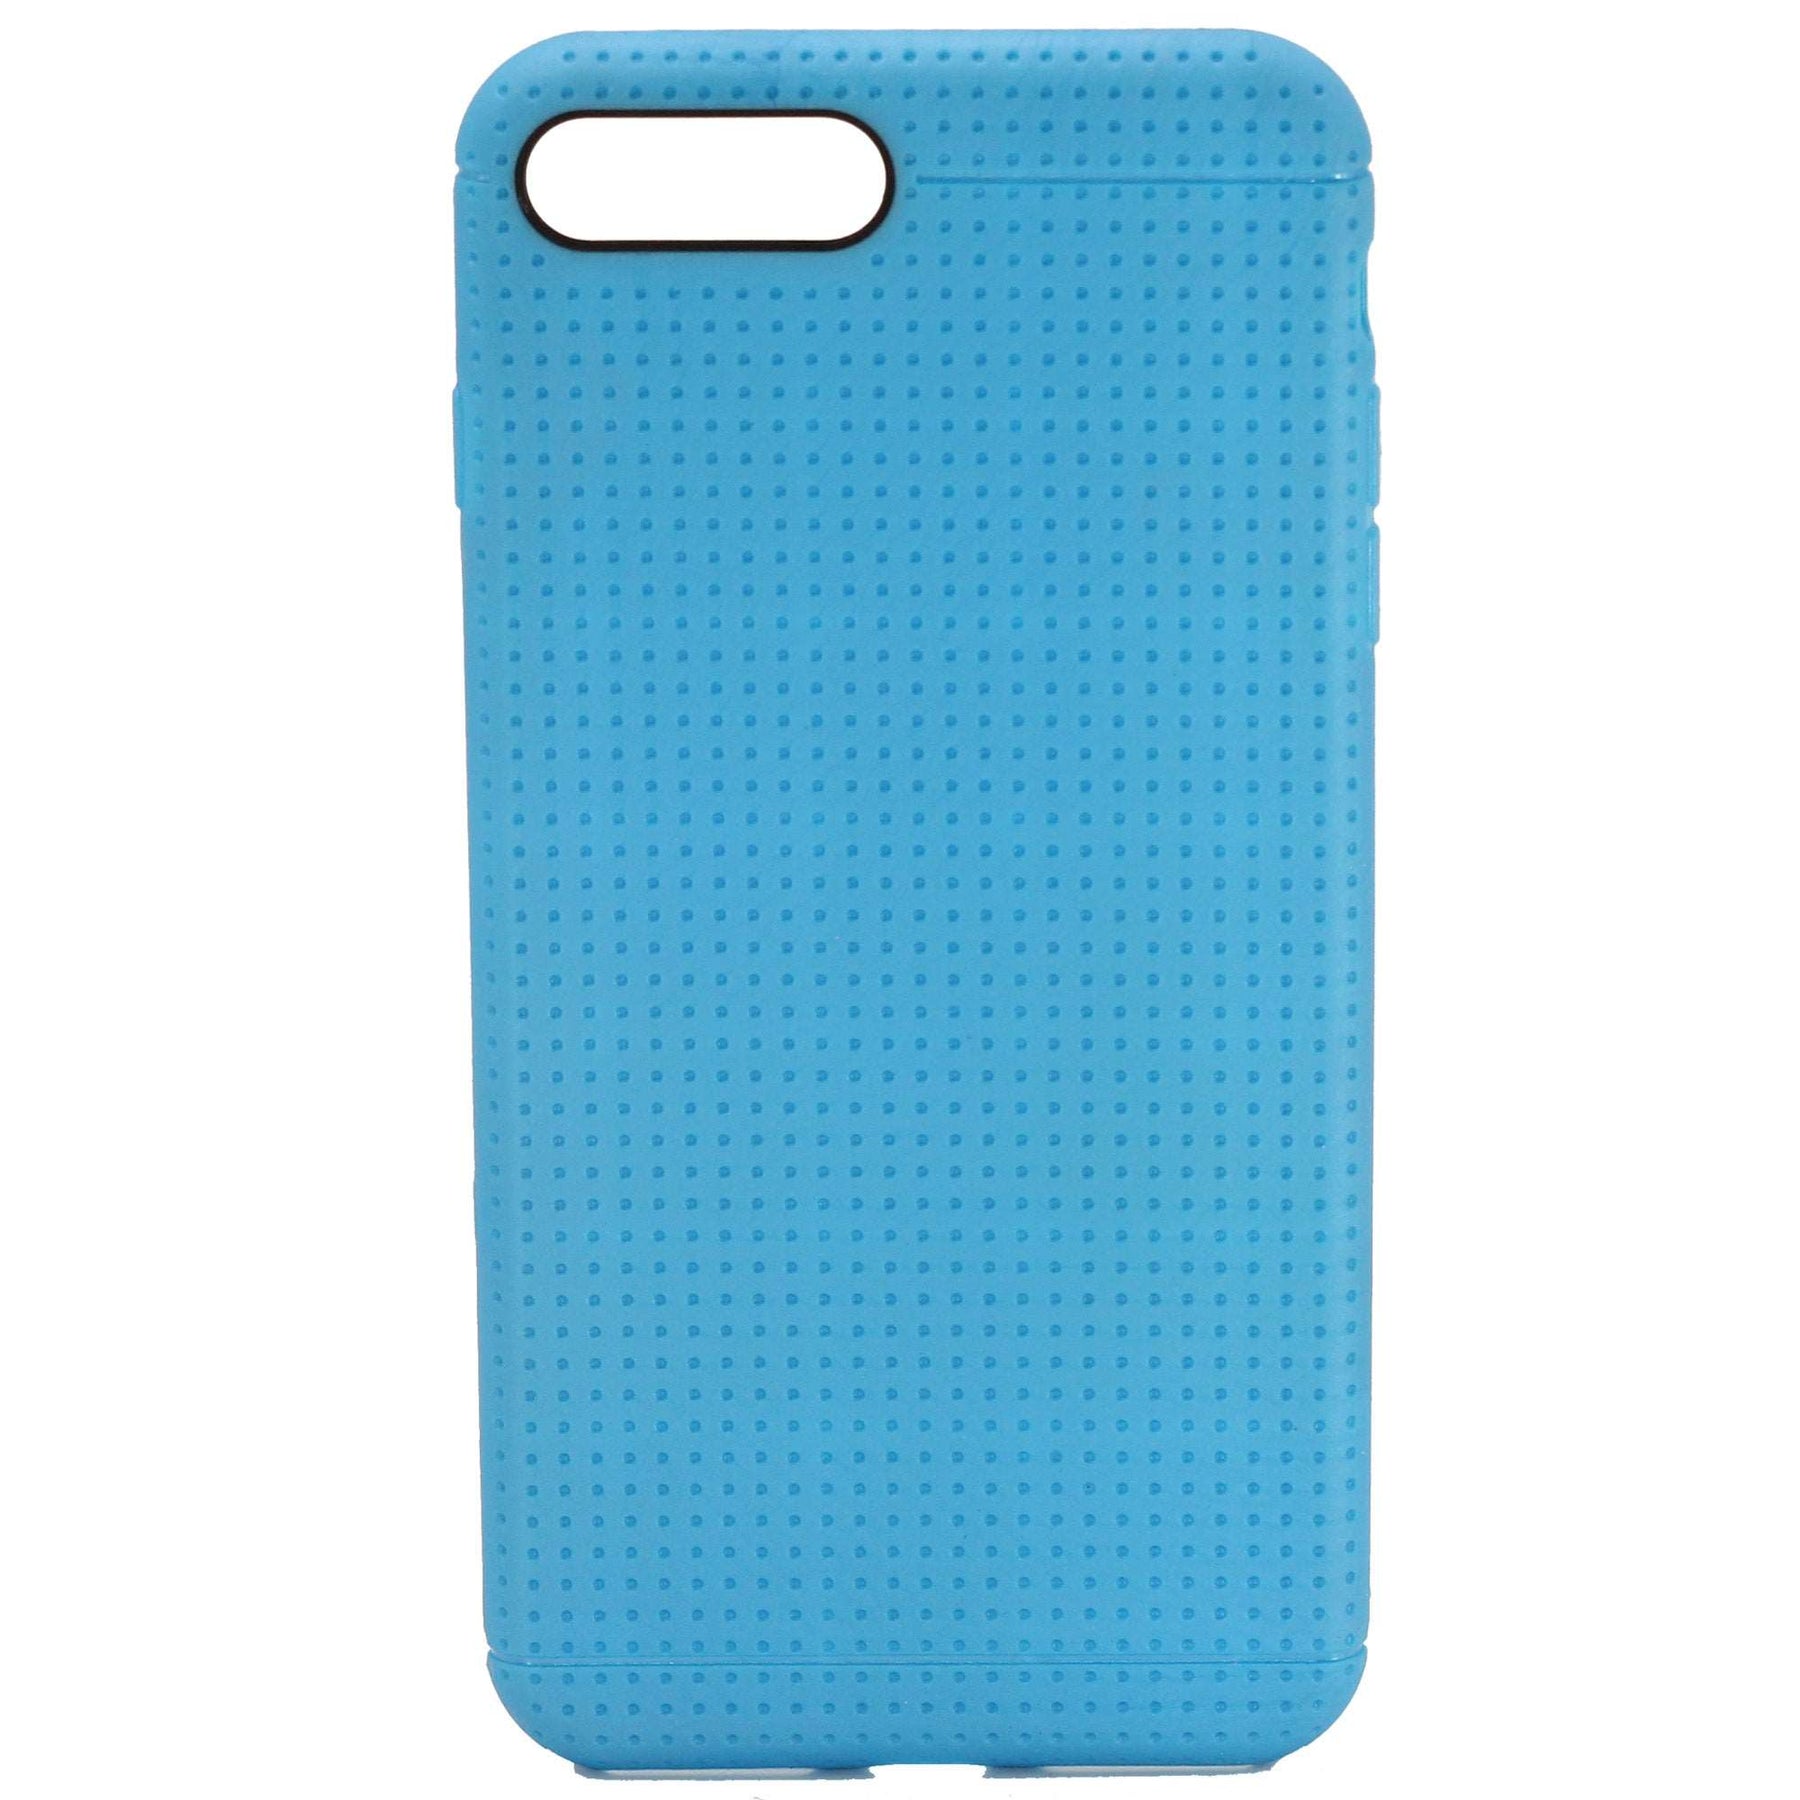 Apple iPhone 7/8 Plus Grid Gel Case Dark Blue